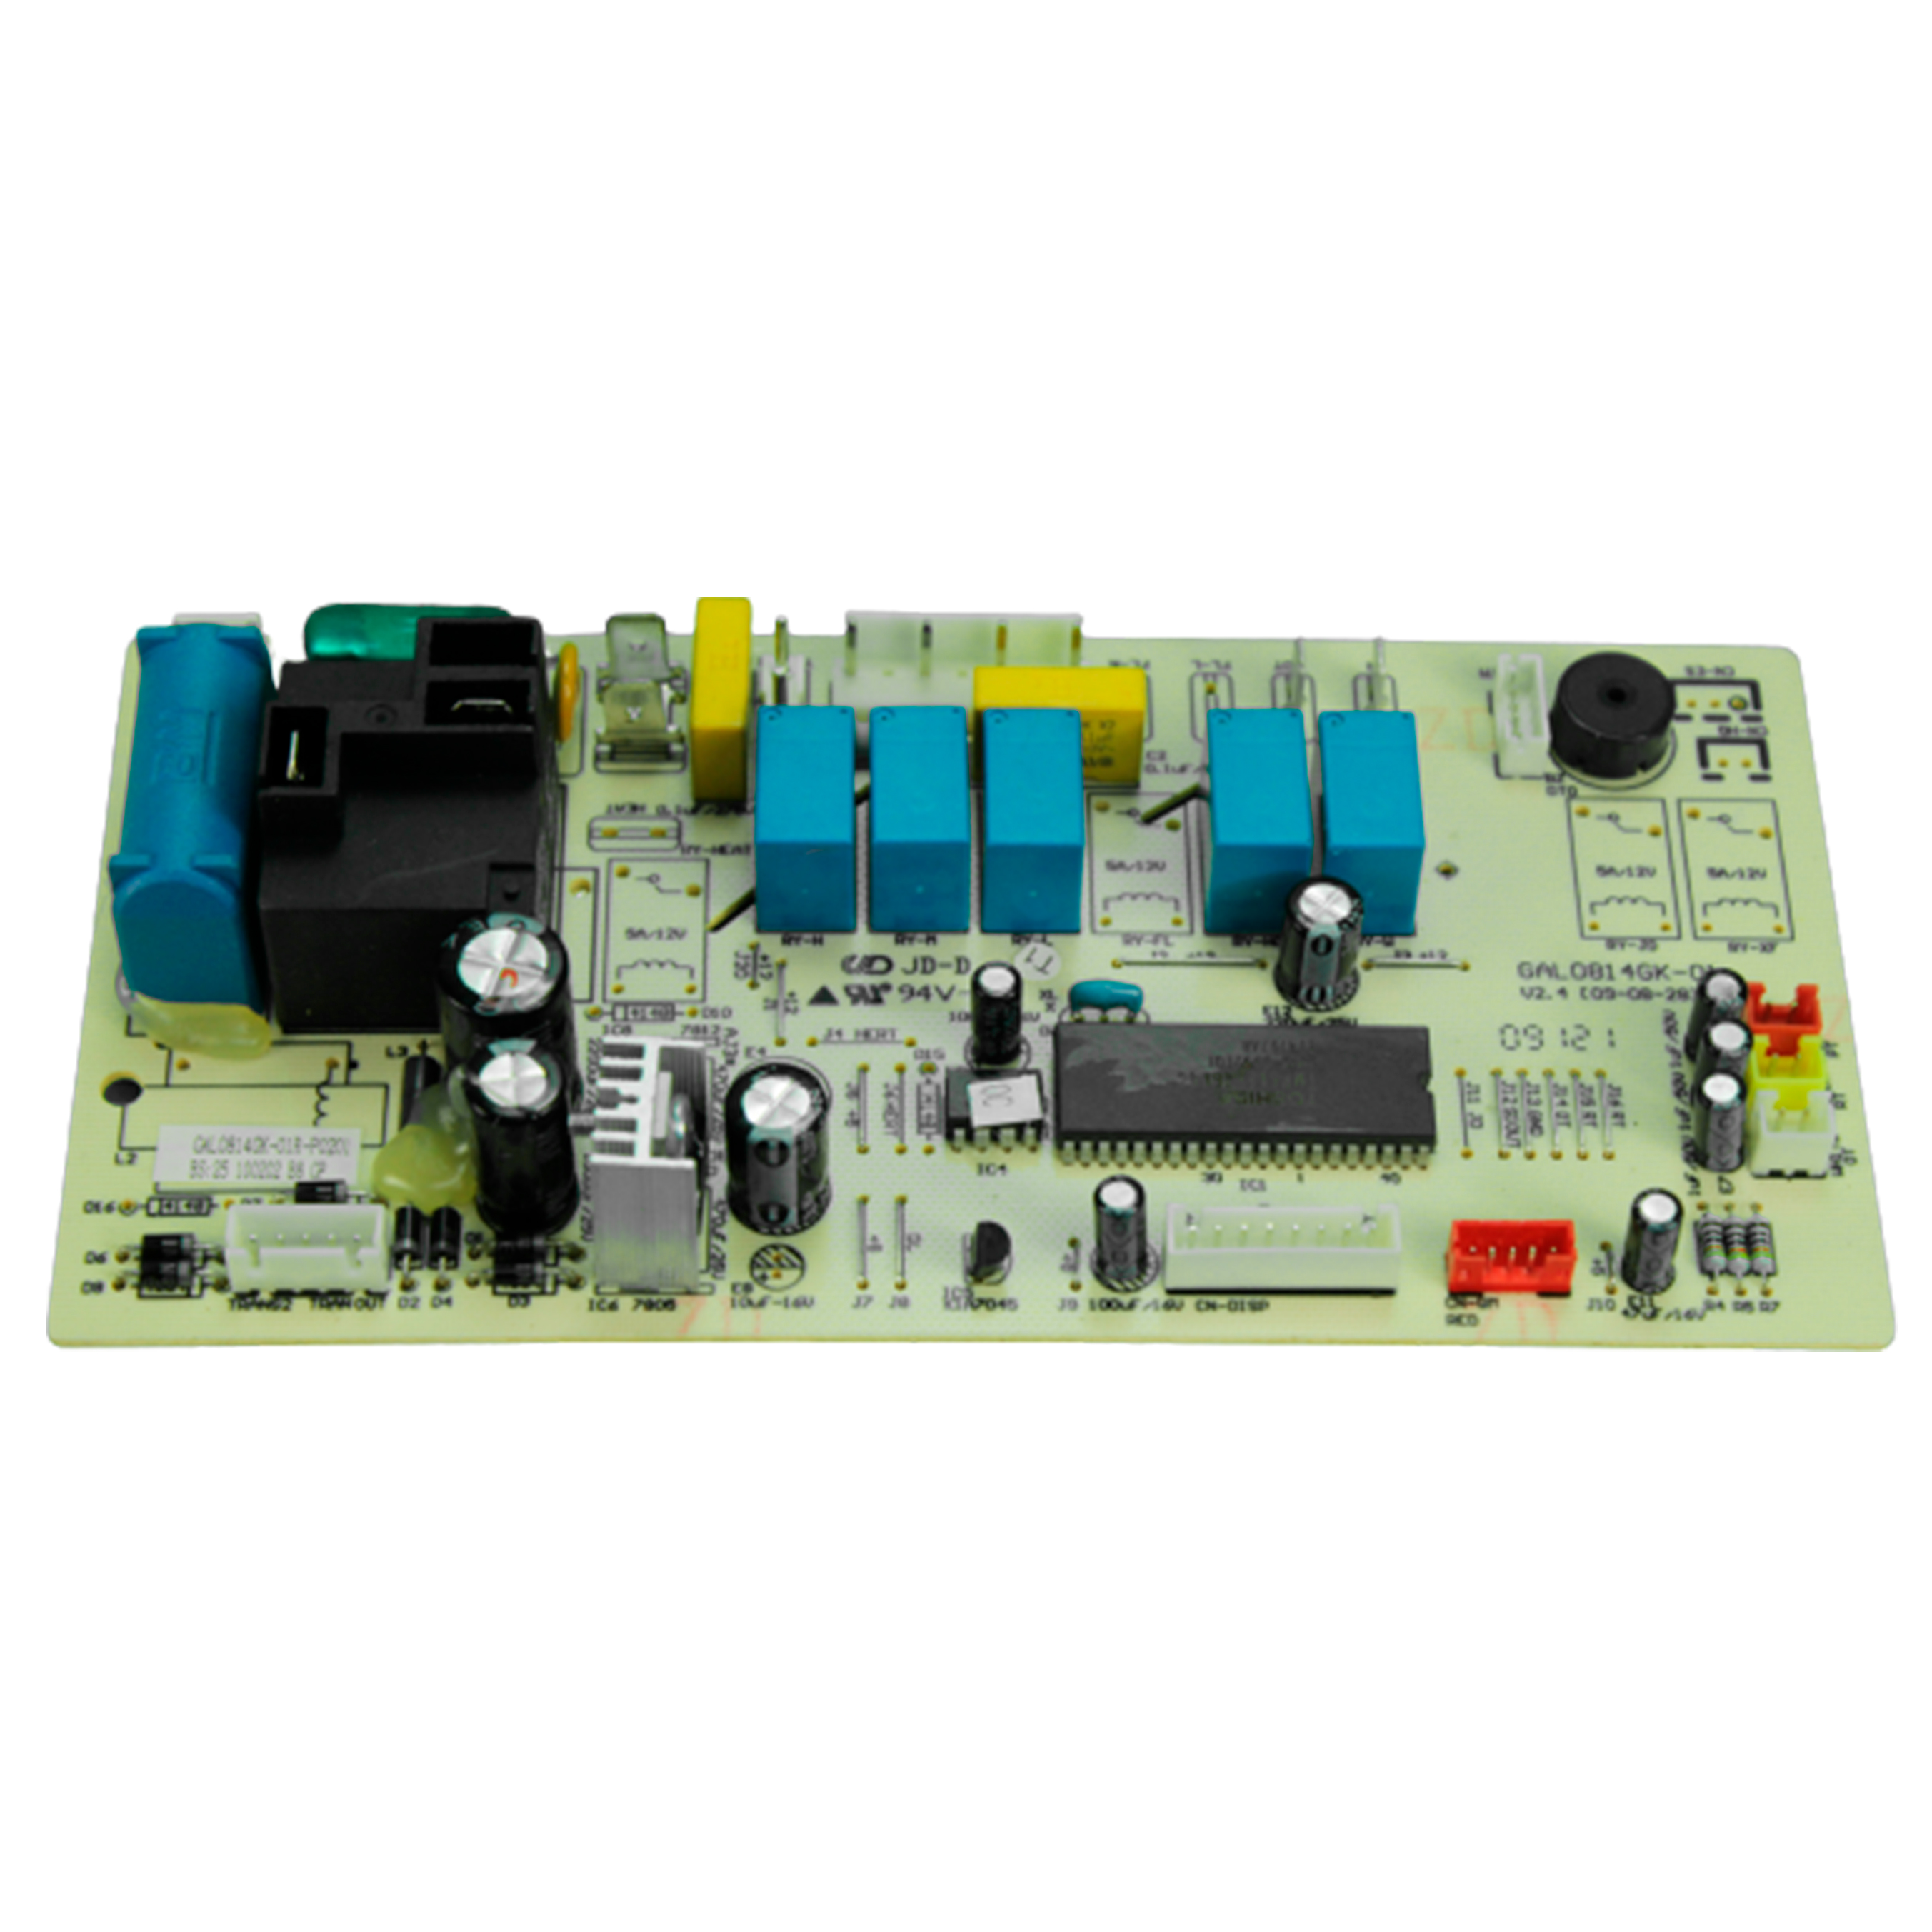 tarjeta-electronica-evaporador-para-minisplit-1ton-110v-c-c-cap-3mf-250v-261000091819